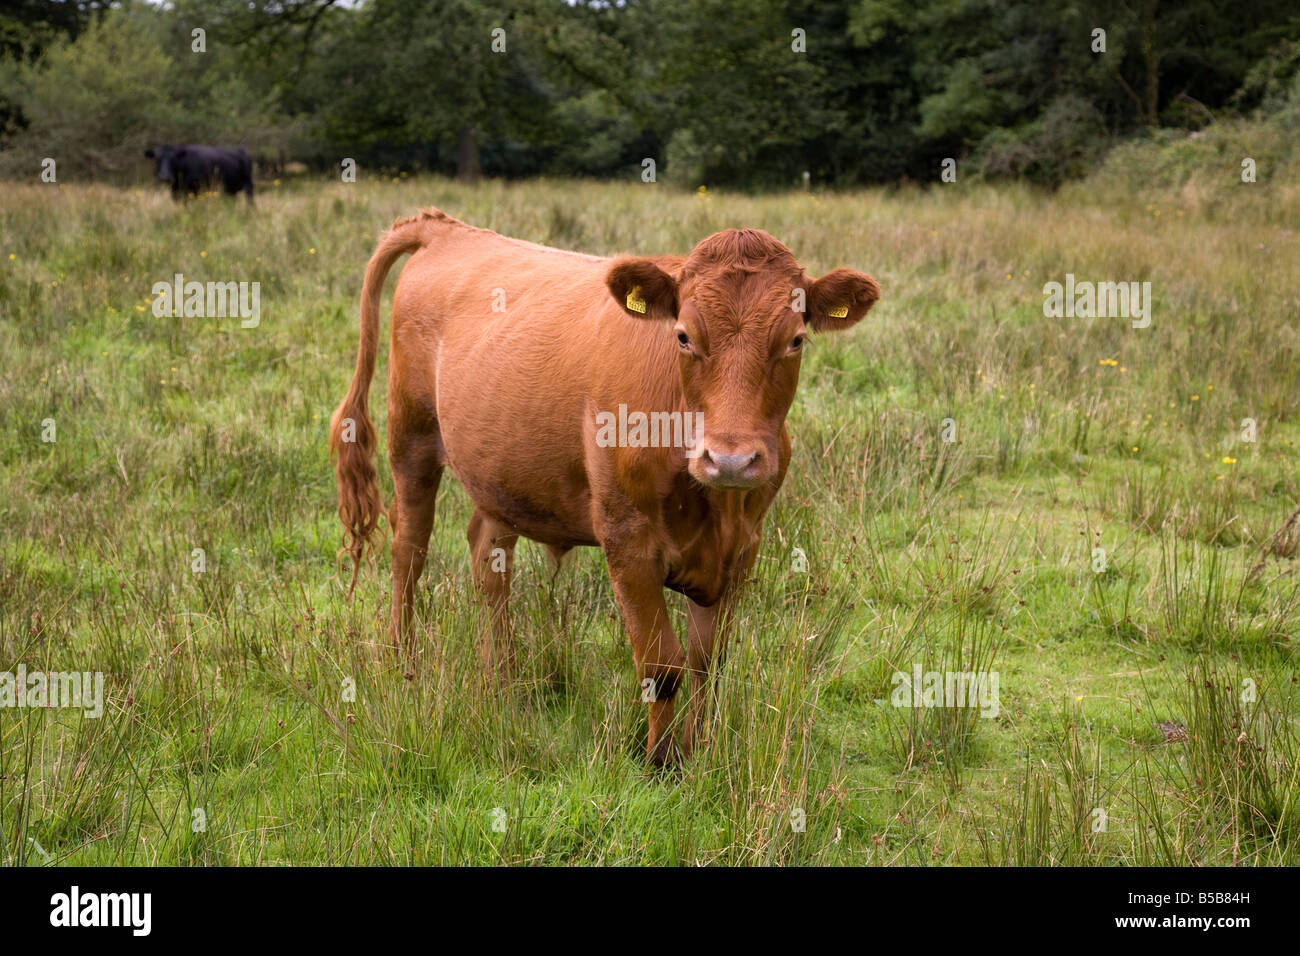 cattle grazing meshaw devon Stock Photo